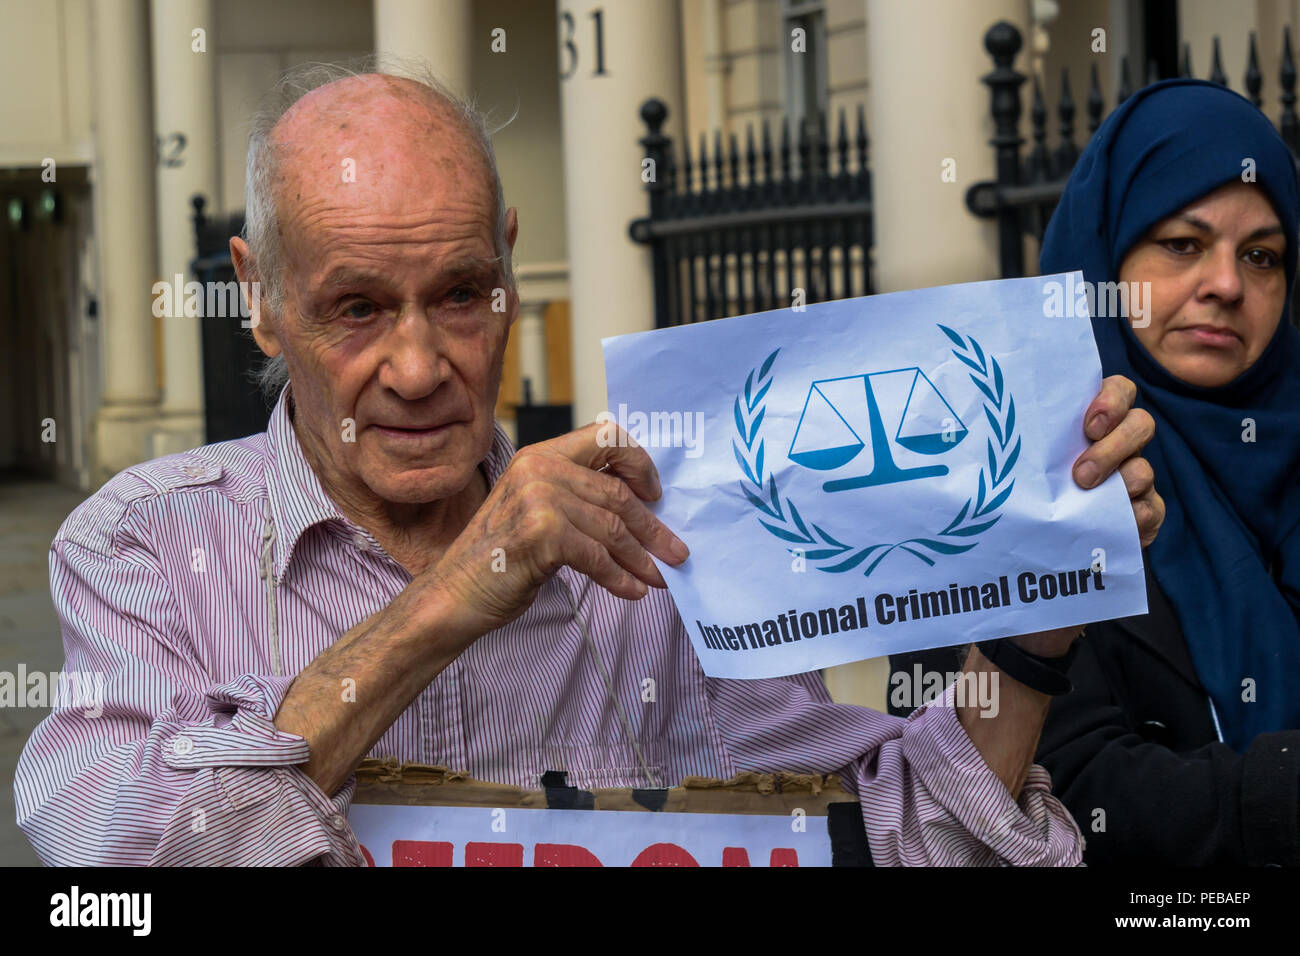 Août 13, 2018 - Londres, Royaume-Uni. 13 août 2018. La courte pièce de théâtre de rue se termine avec les manifestants dans les masques pour "Fournisseur d'armes', Mai Theresa Boucher de Bahreïn Hamid Khalifa' et 'Petit Stooge Fawaz Khalifa' dans les chaînes et prises à la Cour pénale internationale pour leurs crimes contre le peuple de Bahreïn. Les manifestants ont défié la police qui leur a dit qu'ils ne peuvent pas protester sur la chaussée à l'extérieur de l'ambassade de Bahreïn à l'appui de gréviste de la faim Ali Mushaima qui a été à l'extérieur de l'ambassade de Bahreïn dans Belgrave Square depuis le 1er août, pour lui demander son père âgé de 70 ans de priso Banque D'Images